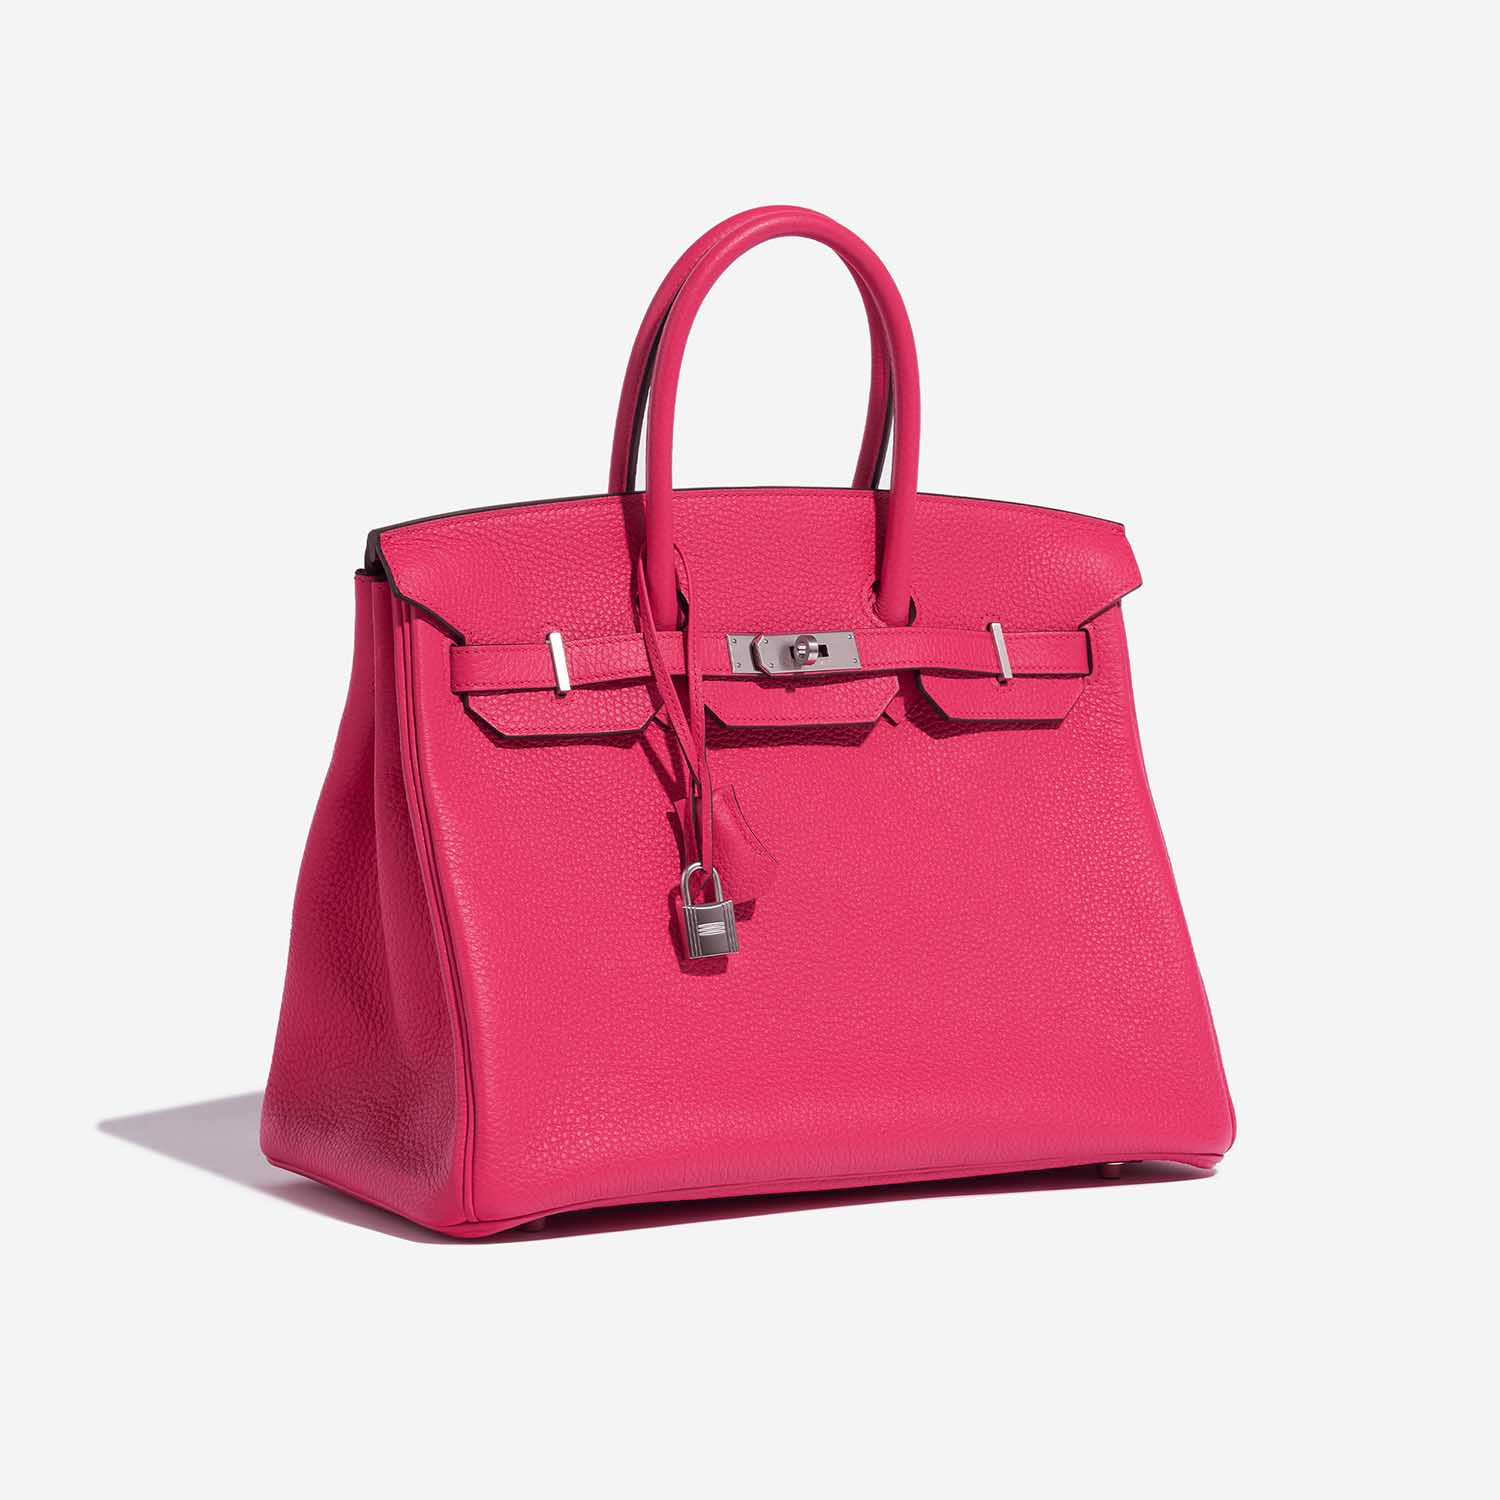 Pre-owned Hermès Tasche Birkin HSS 35 Taurillon Clemence Rose Extreme / Rose Pourpre Rose Side Front | Verkaufen Sie Ihre Designer-Tasche auf Saclab.com